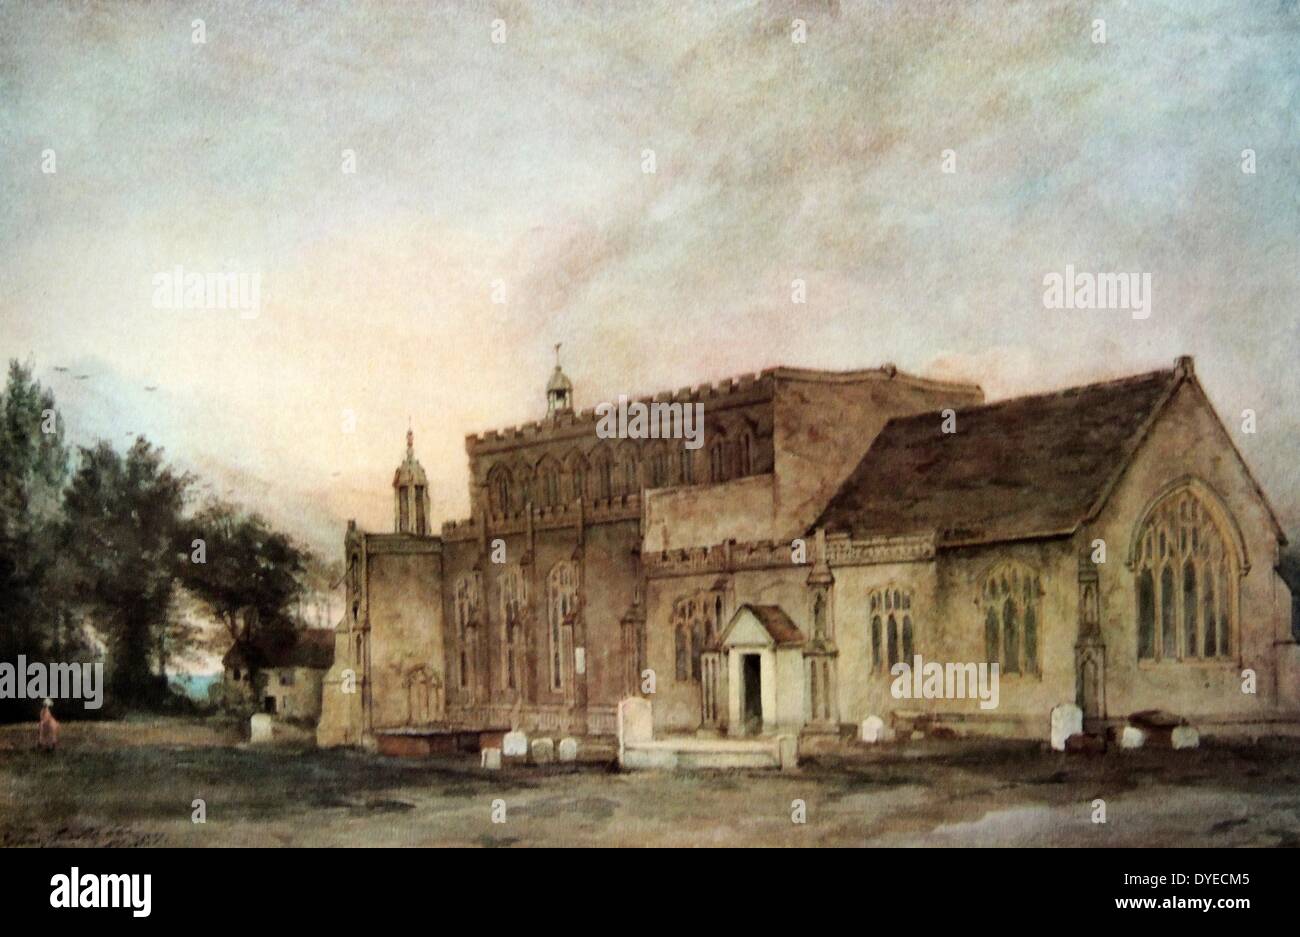 Öl Landschaft Gemälde mit dem Titel "East Bergholt Kirche'. Das Gemälde zeigt St Mary's Church, in der 15. und 16. Jahrhundert errichtet, in dem Dorf East Bergholt, England. Von John Constable (1776-1837) Englische romantische Maler für seine Landschaftsbilder bekannt. Vom 1810 Stockfoto